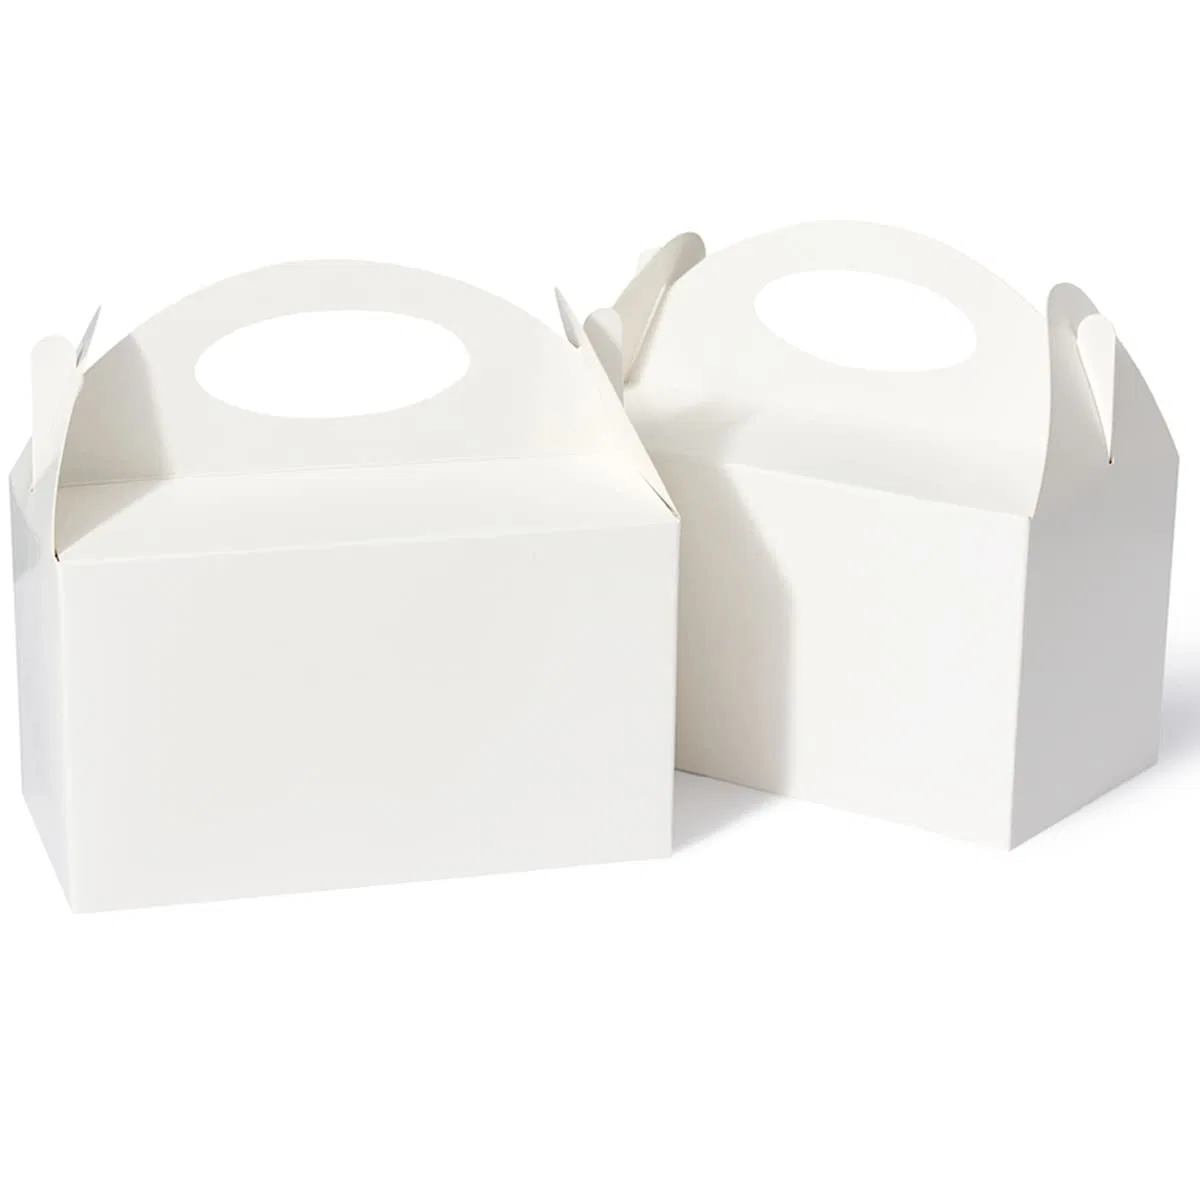 Cajas de Regalo de Fiesta Blanco, 6 pulgadas Cajas de Candy favores de fiesta con asa de papel Bolsas de regalo de galletas Cajas de Gable bolsas de aperitivos para niños cumpleaños Baby Shower Boda